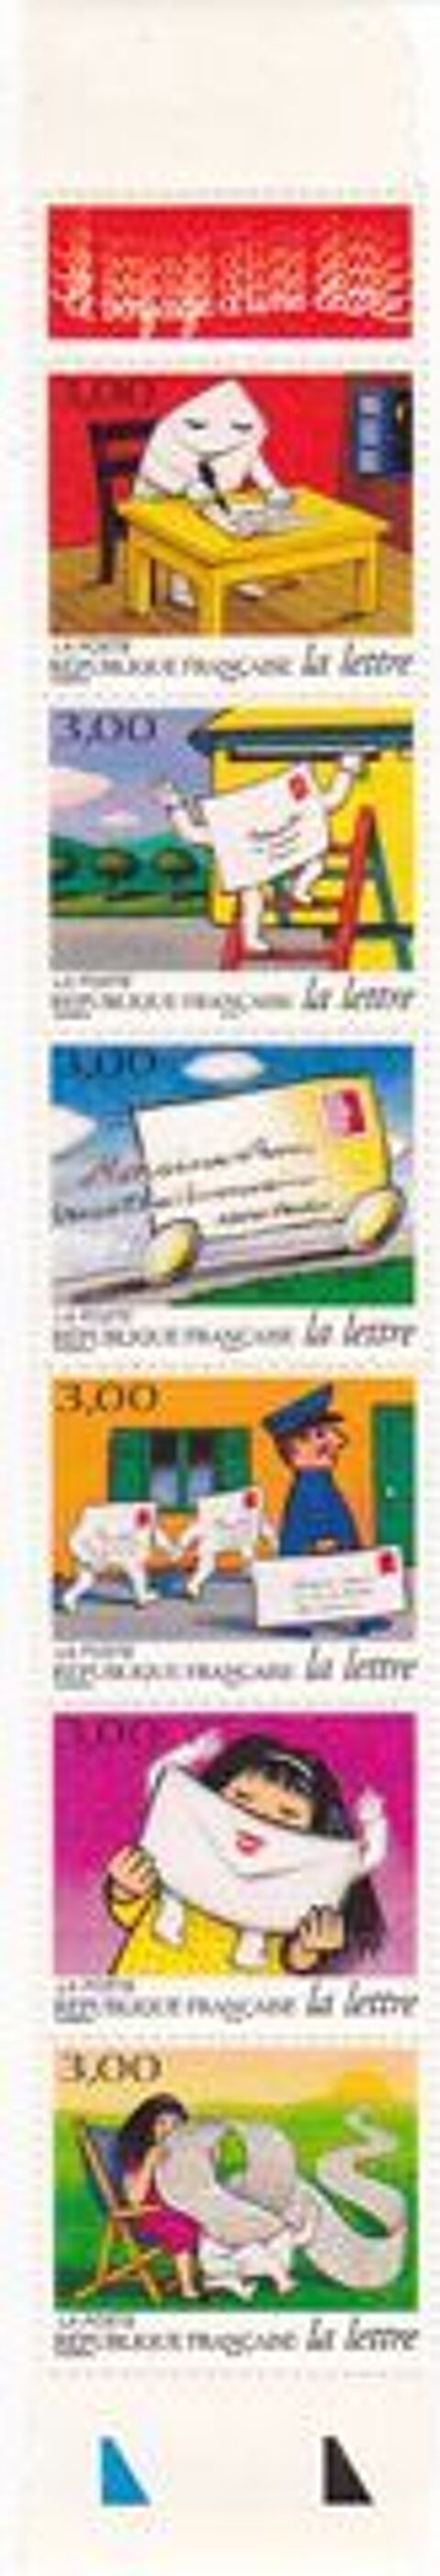 FRANCE Timbres Bande Le Voyage d'une lettre 1997 3 Jou-ls-Tours (37)